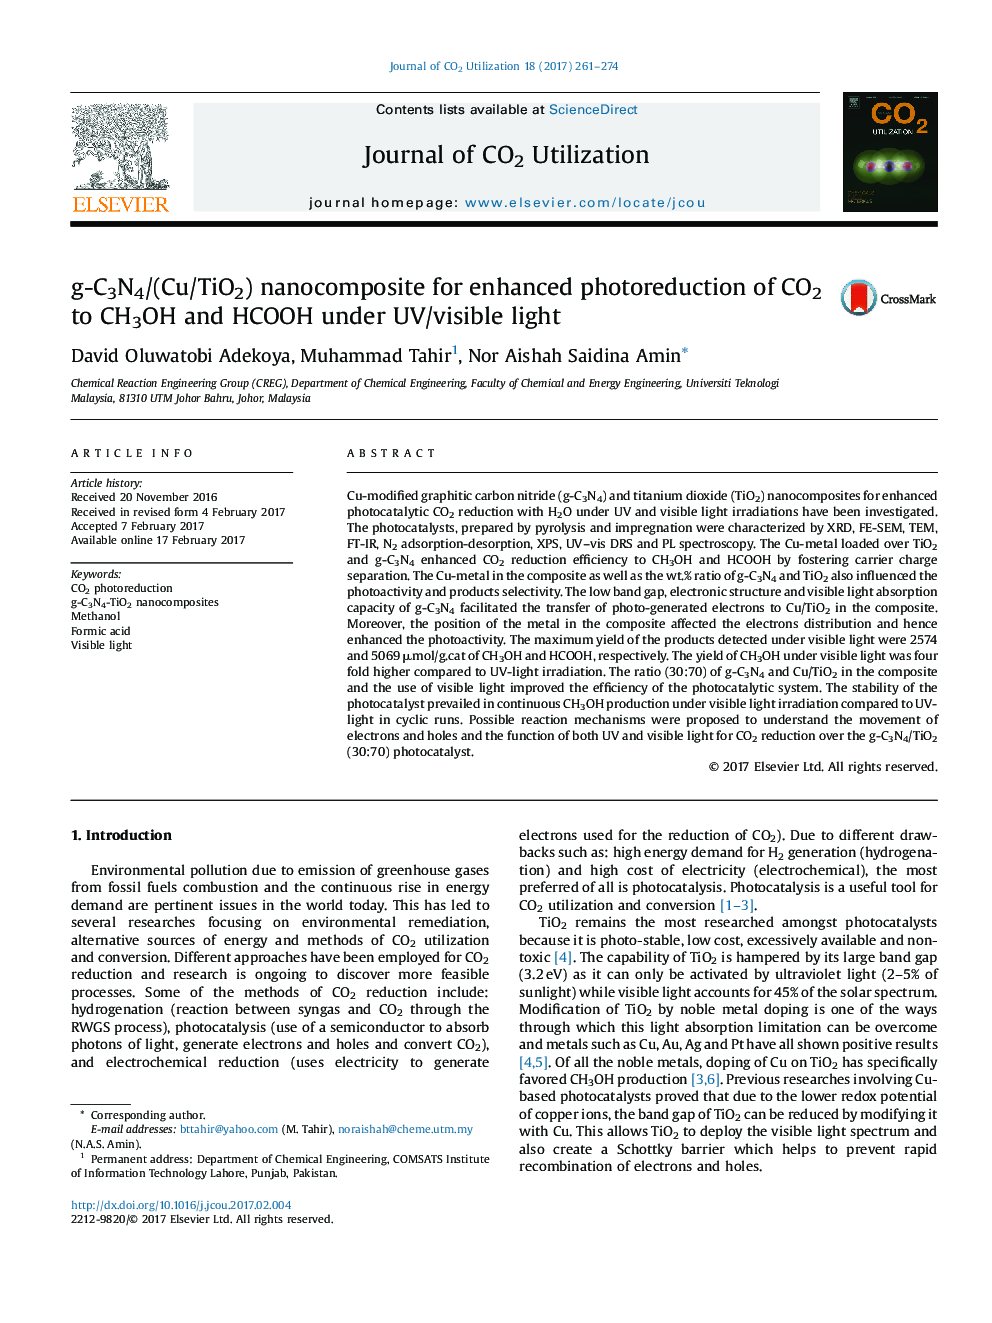 نانوکامپوزیت g-C3N4 / (Cu / TiO2) برای photoreduction افزایش یافته CO2 به CH3OH و HCOOH تحت UV/نور مرئی